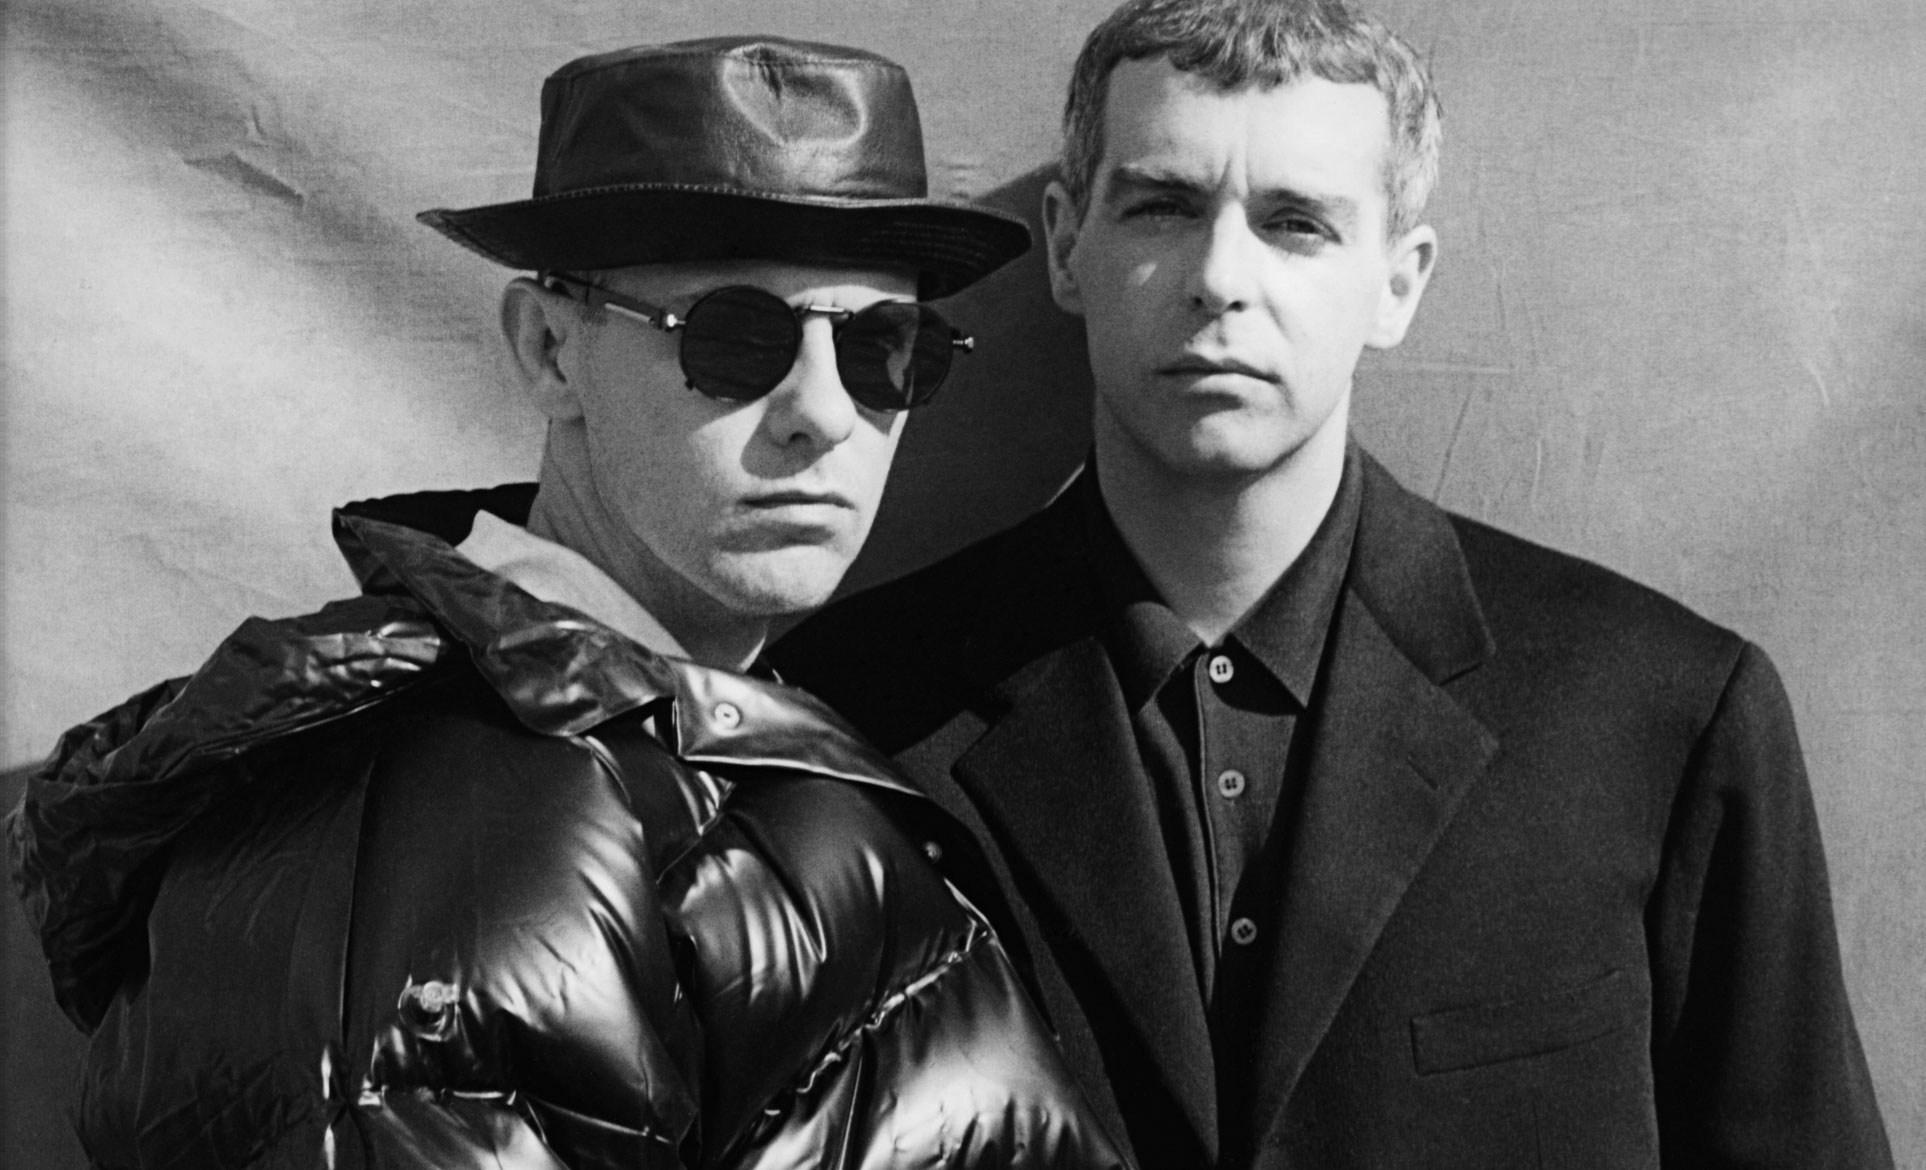 1926x1170px Pet Shop Boys 347.06 KB